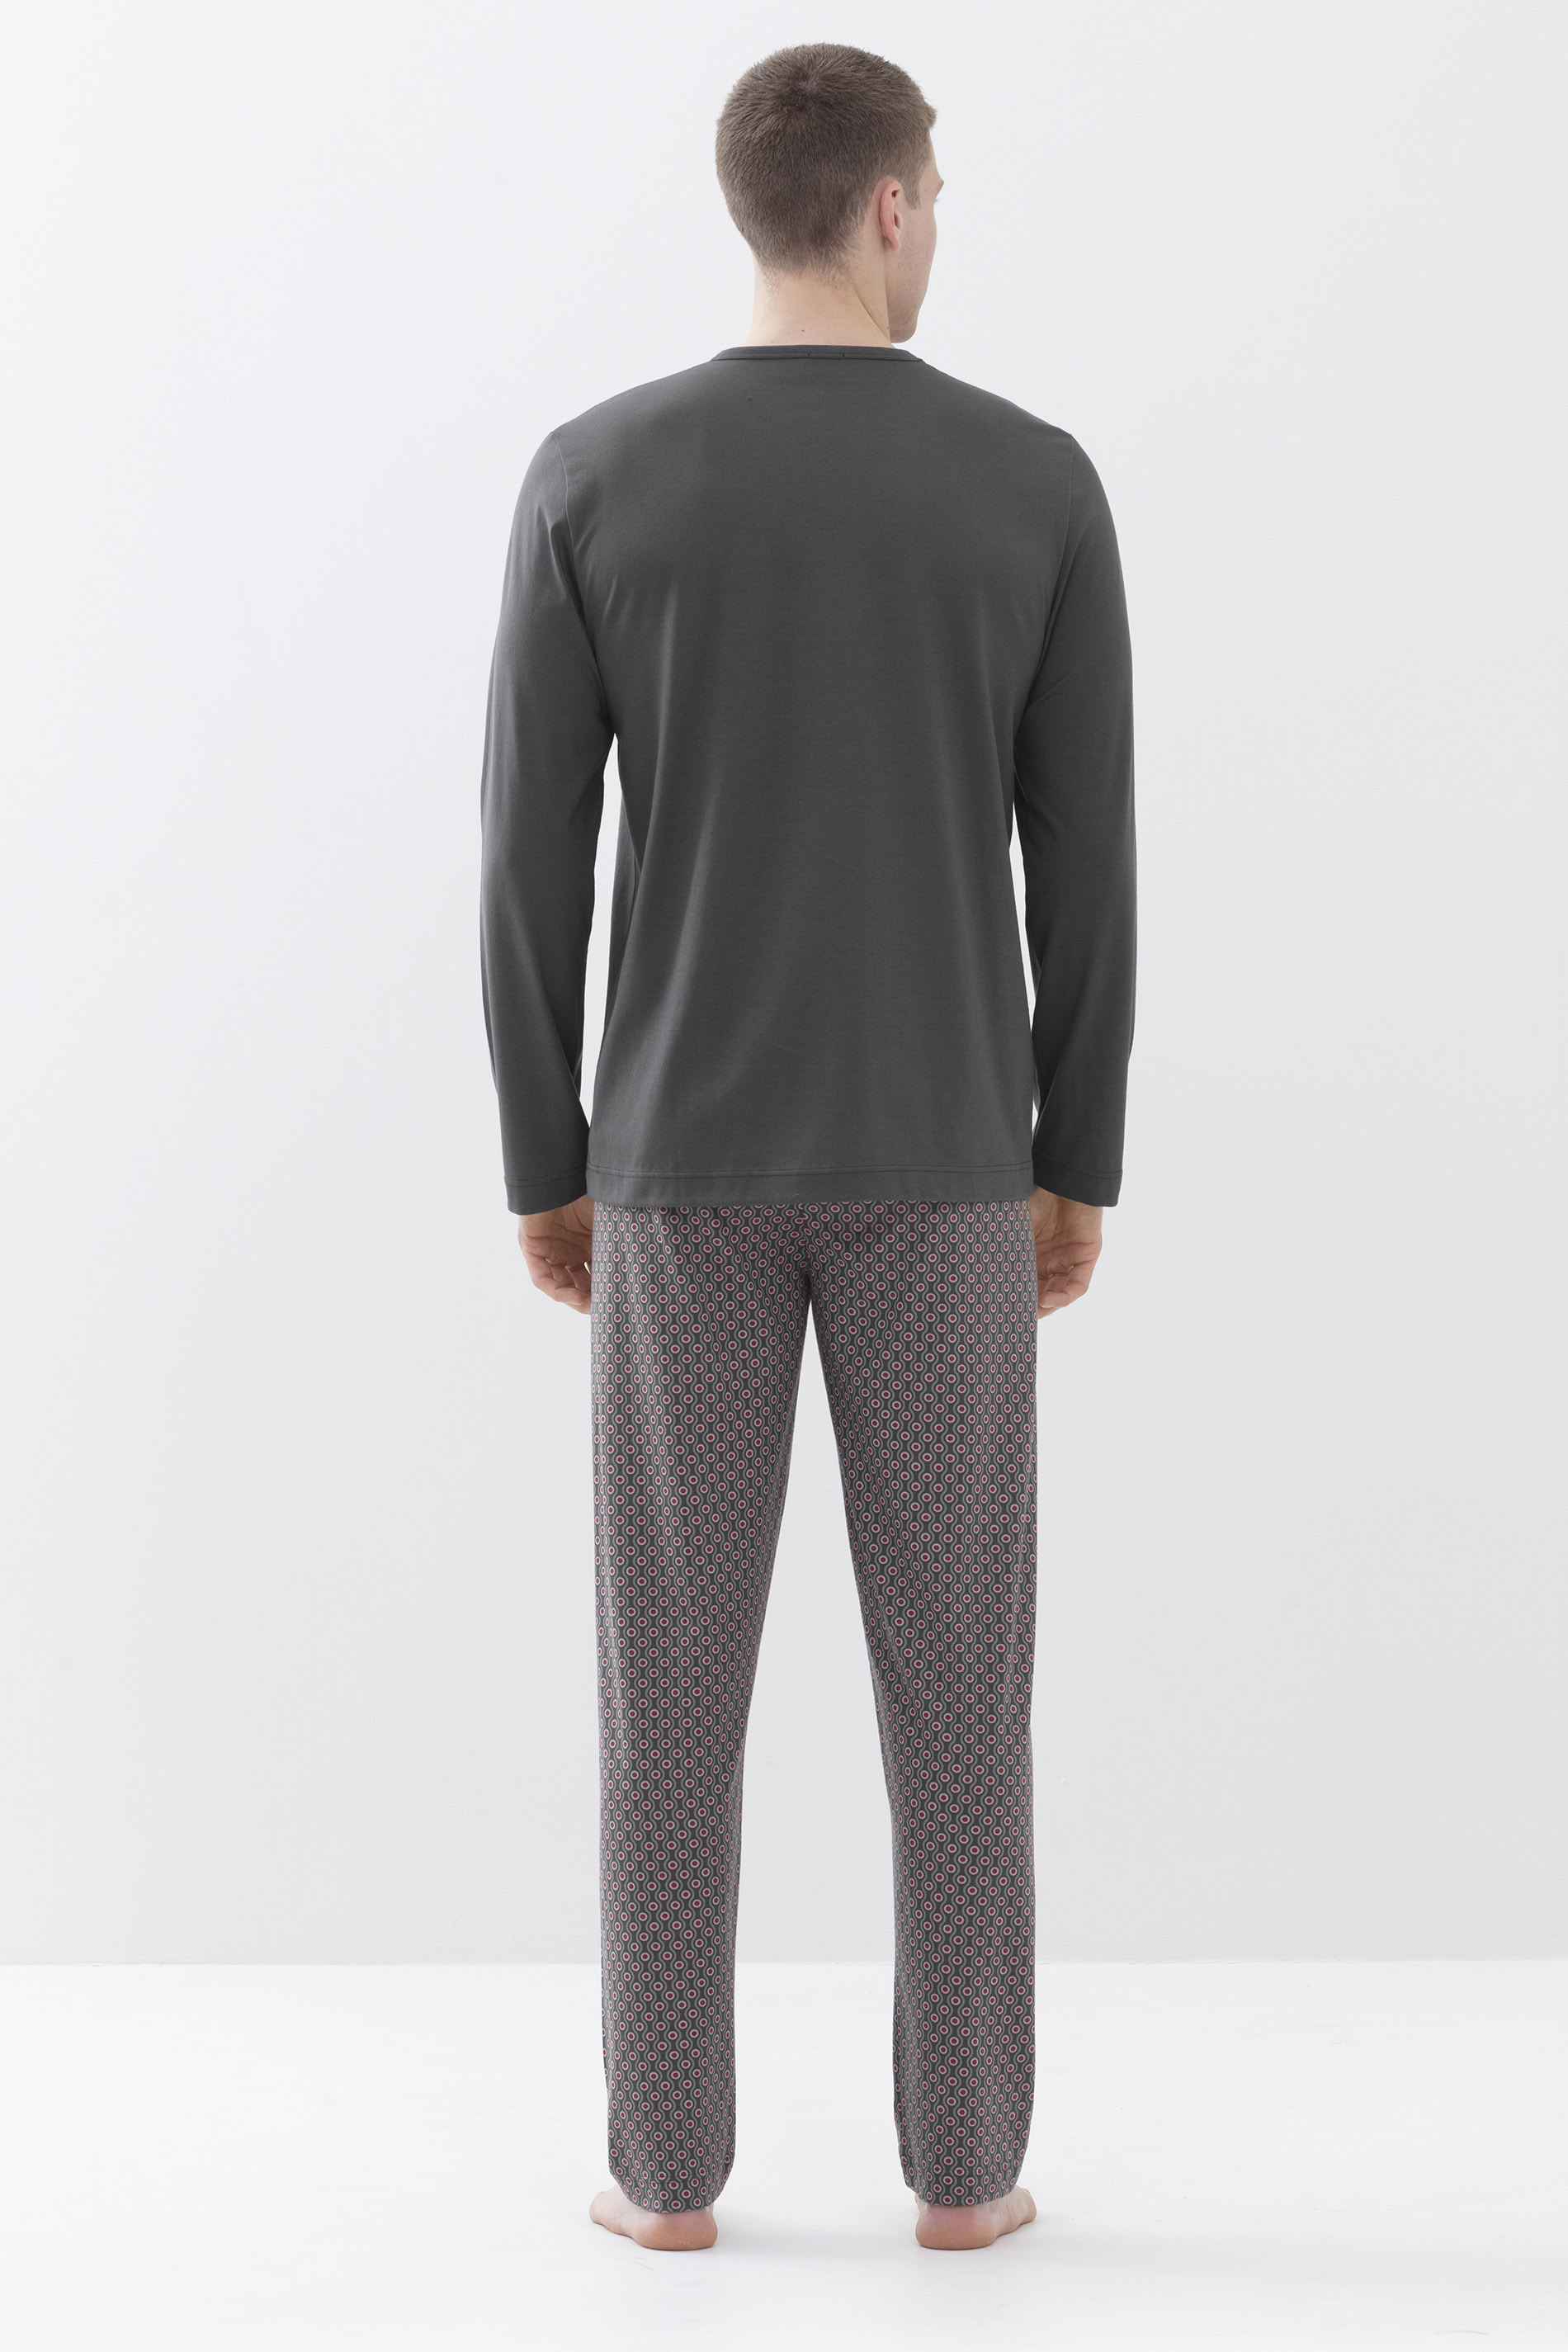 Pyjamas Stormy Grey Serie 4 Col Dots Rear View | mey®